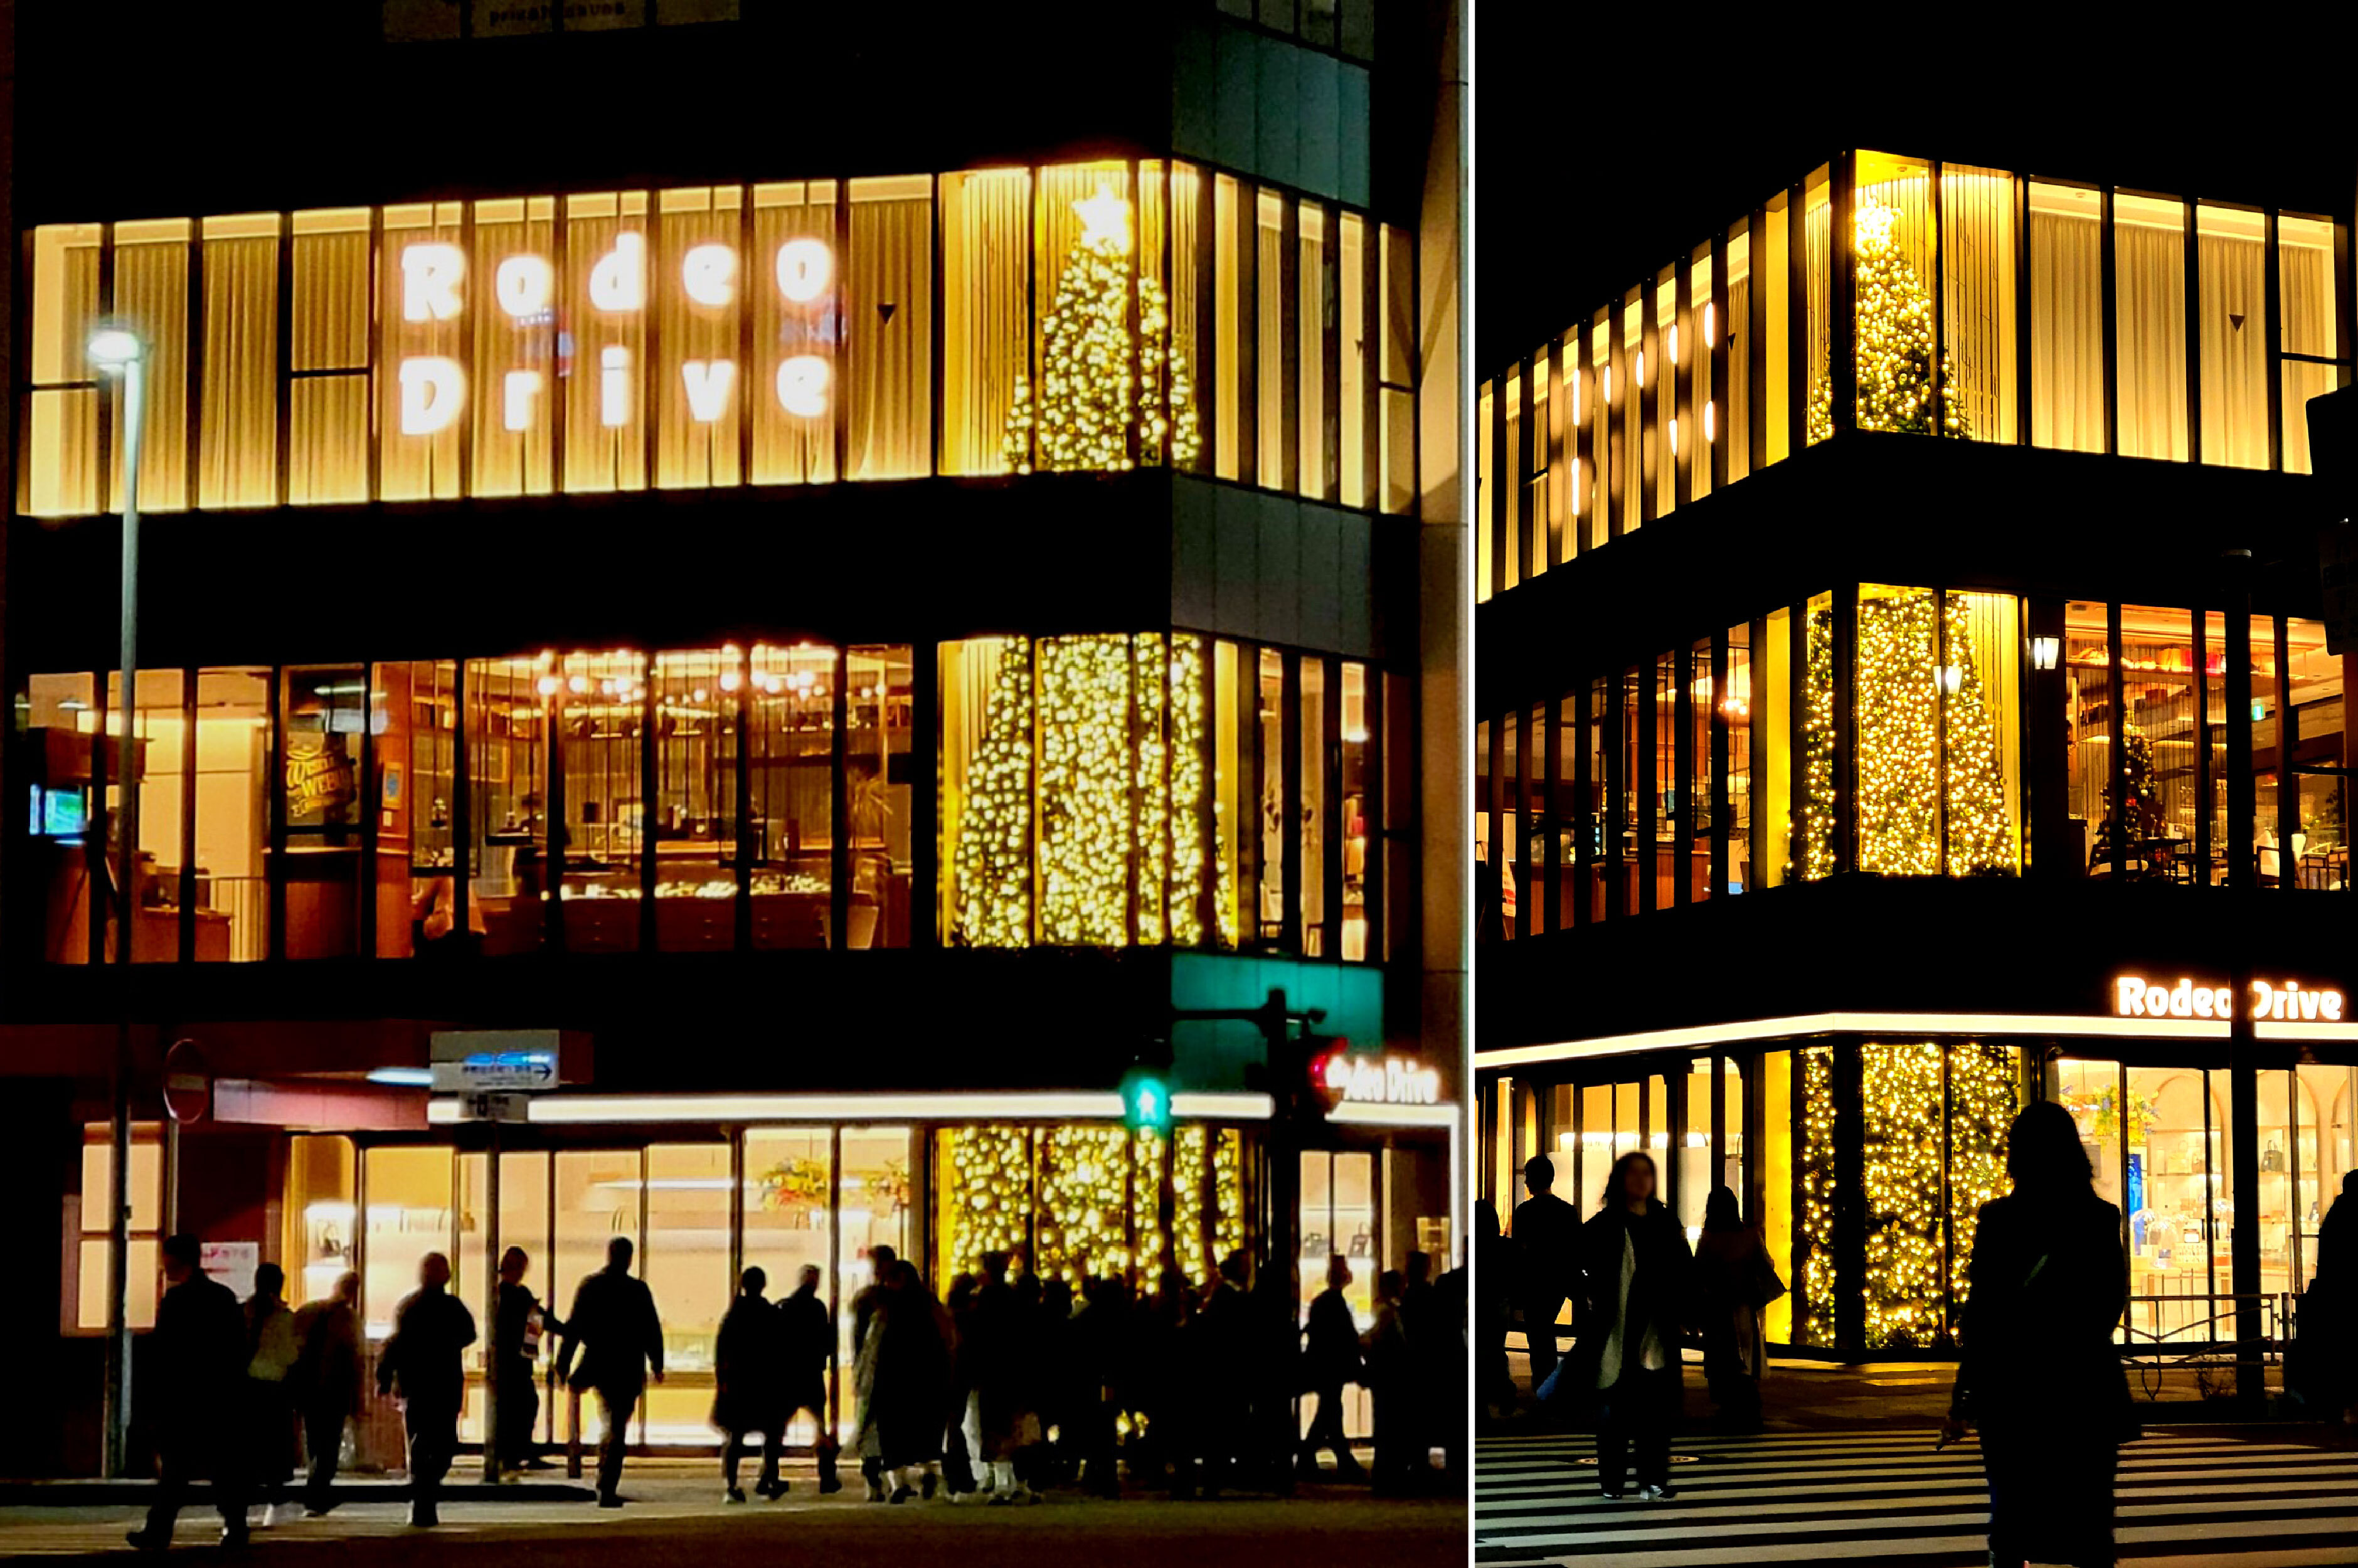 横浜・関内駅徒歩1分に高さ約12mの巨大ツリーに見立てた
クリスマスディスプレイが登場！
『ロデオドライブ横浜関内店』